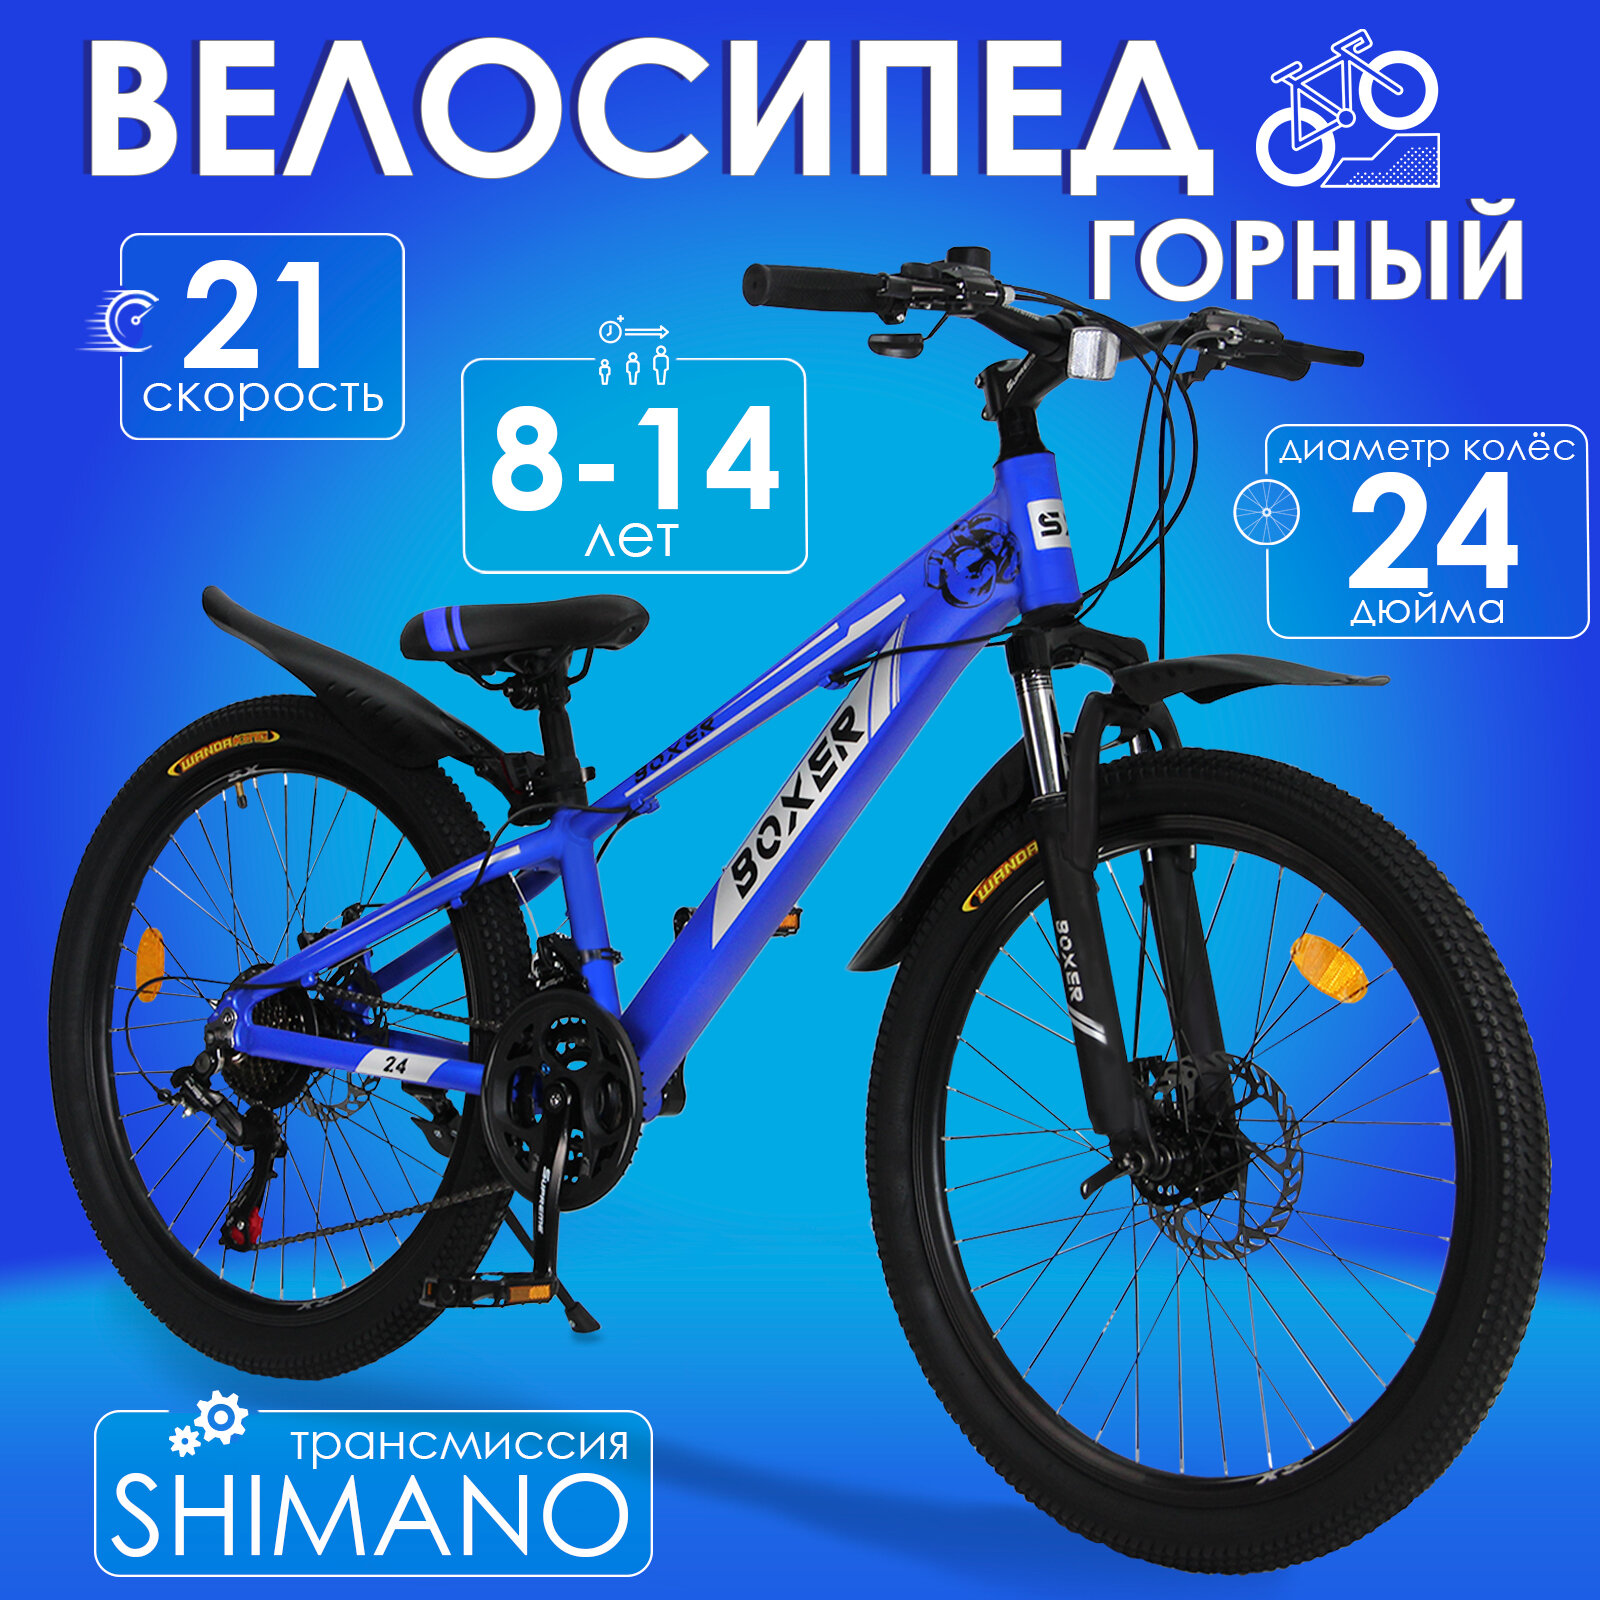 Горный велосипед детский скоростной Boxer 24" cиний, 8-14 лет, 21 скорость (Shimano tourney)